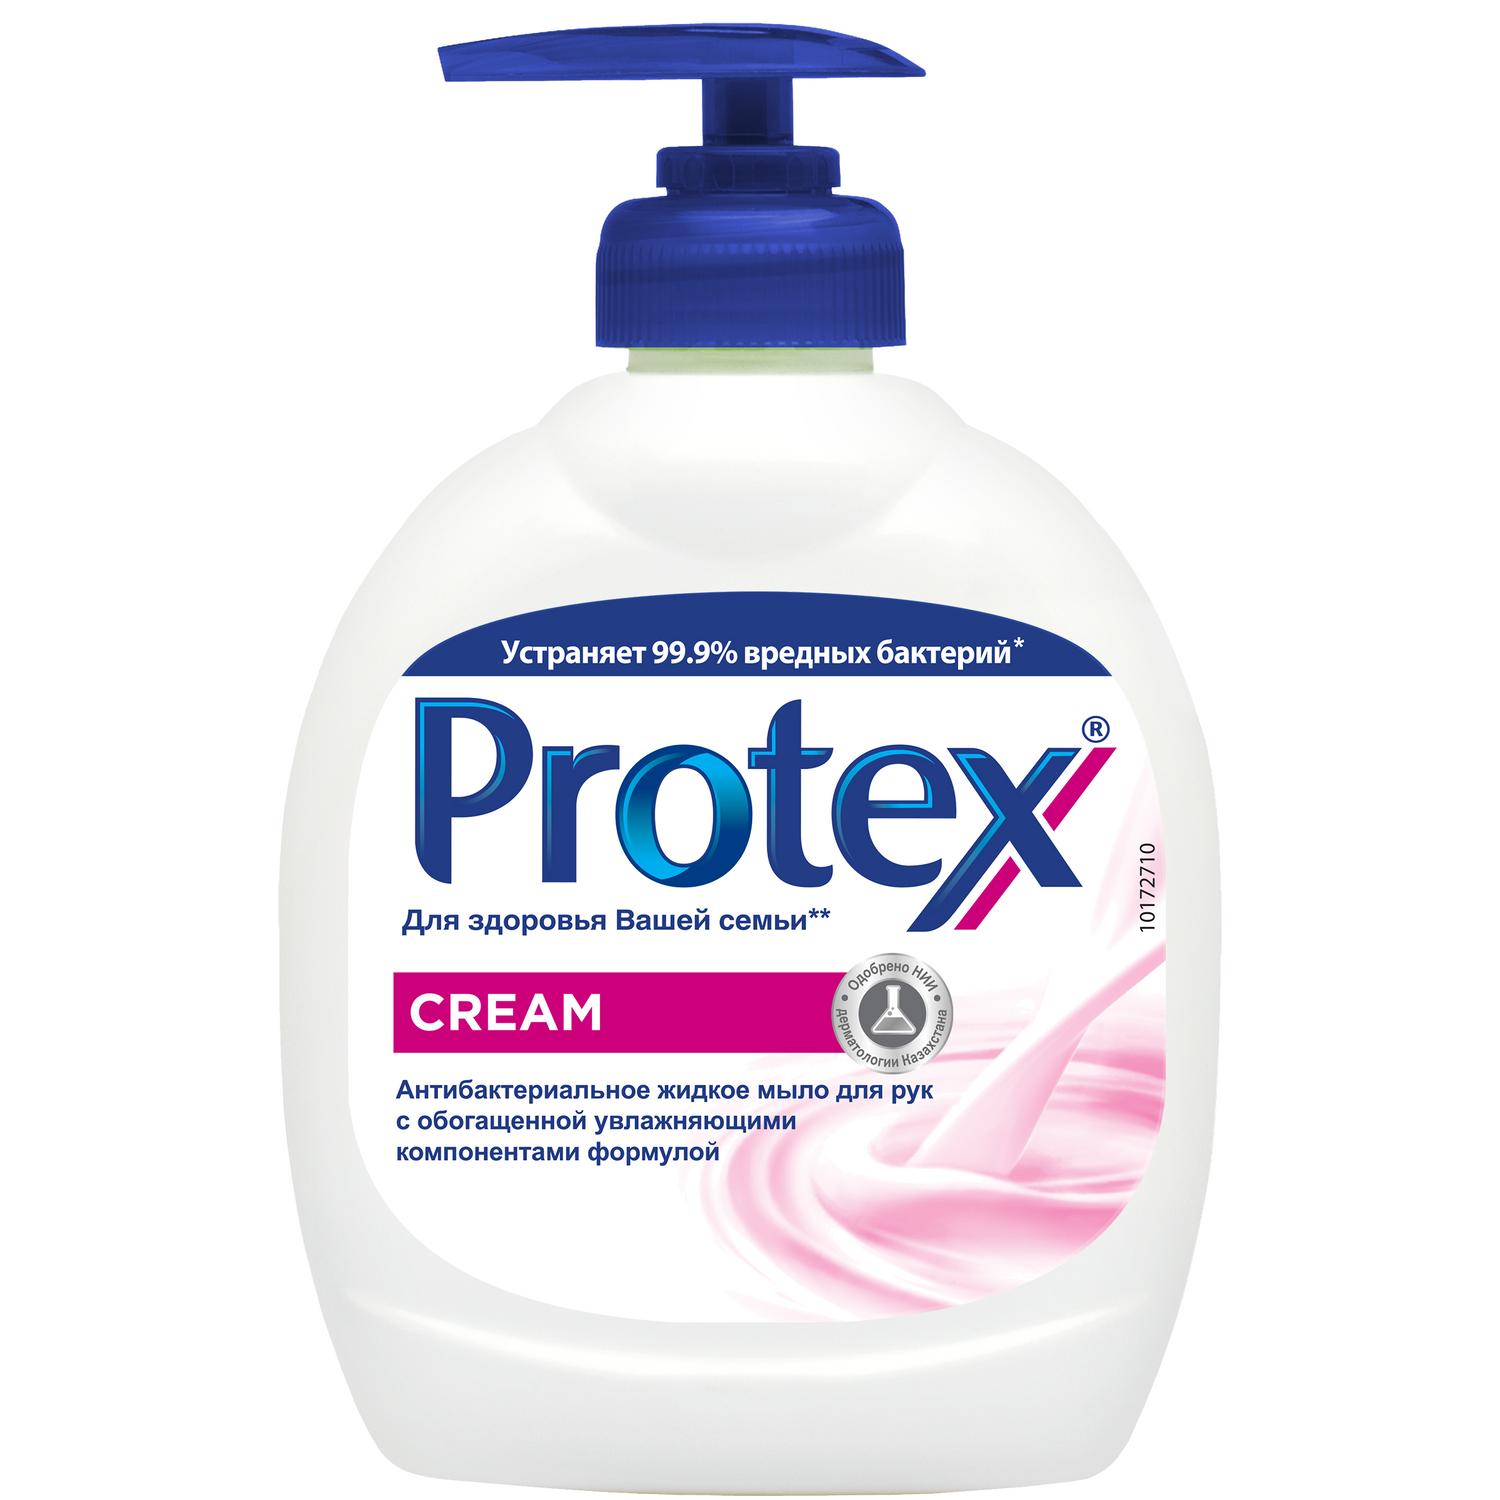 фото Protex антибактериальное жидкое мыло для рук cream, 300 мл